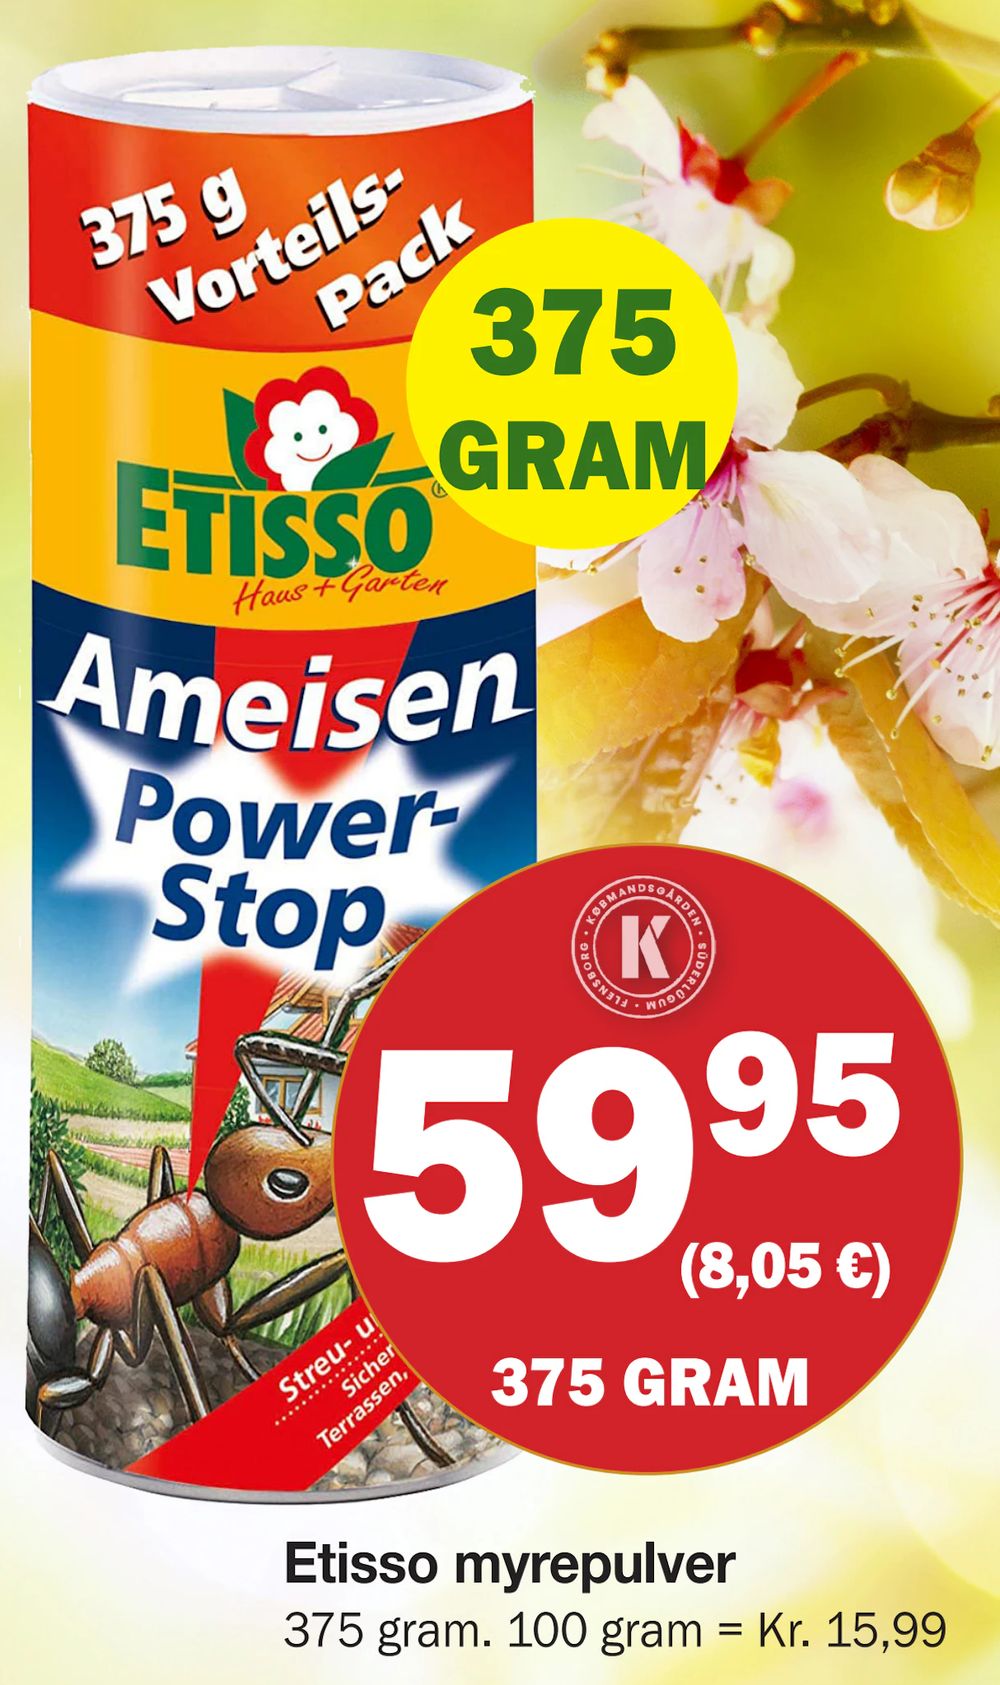 Tilbud på Etisso myrepulver fra Købmandsgården til 59,95 kr.